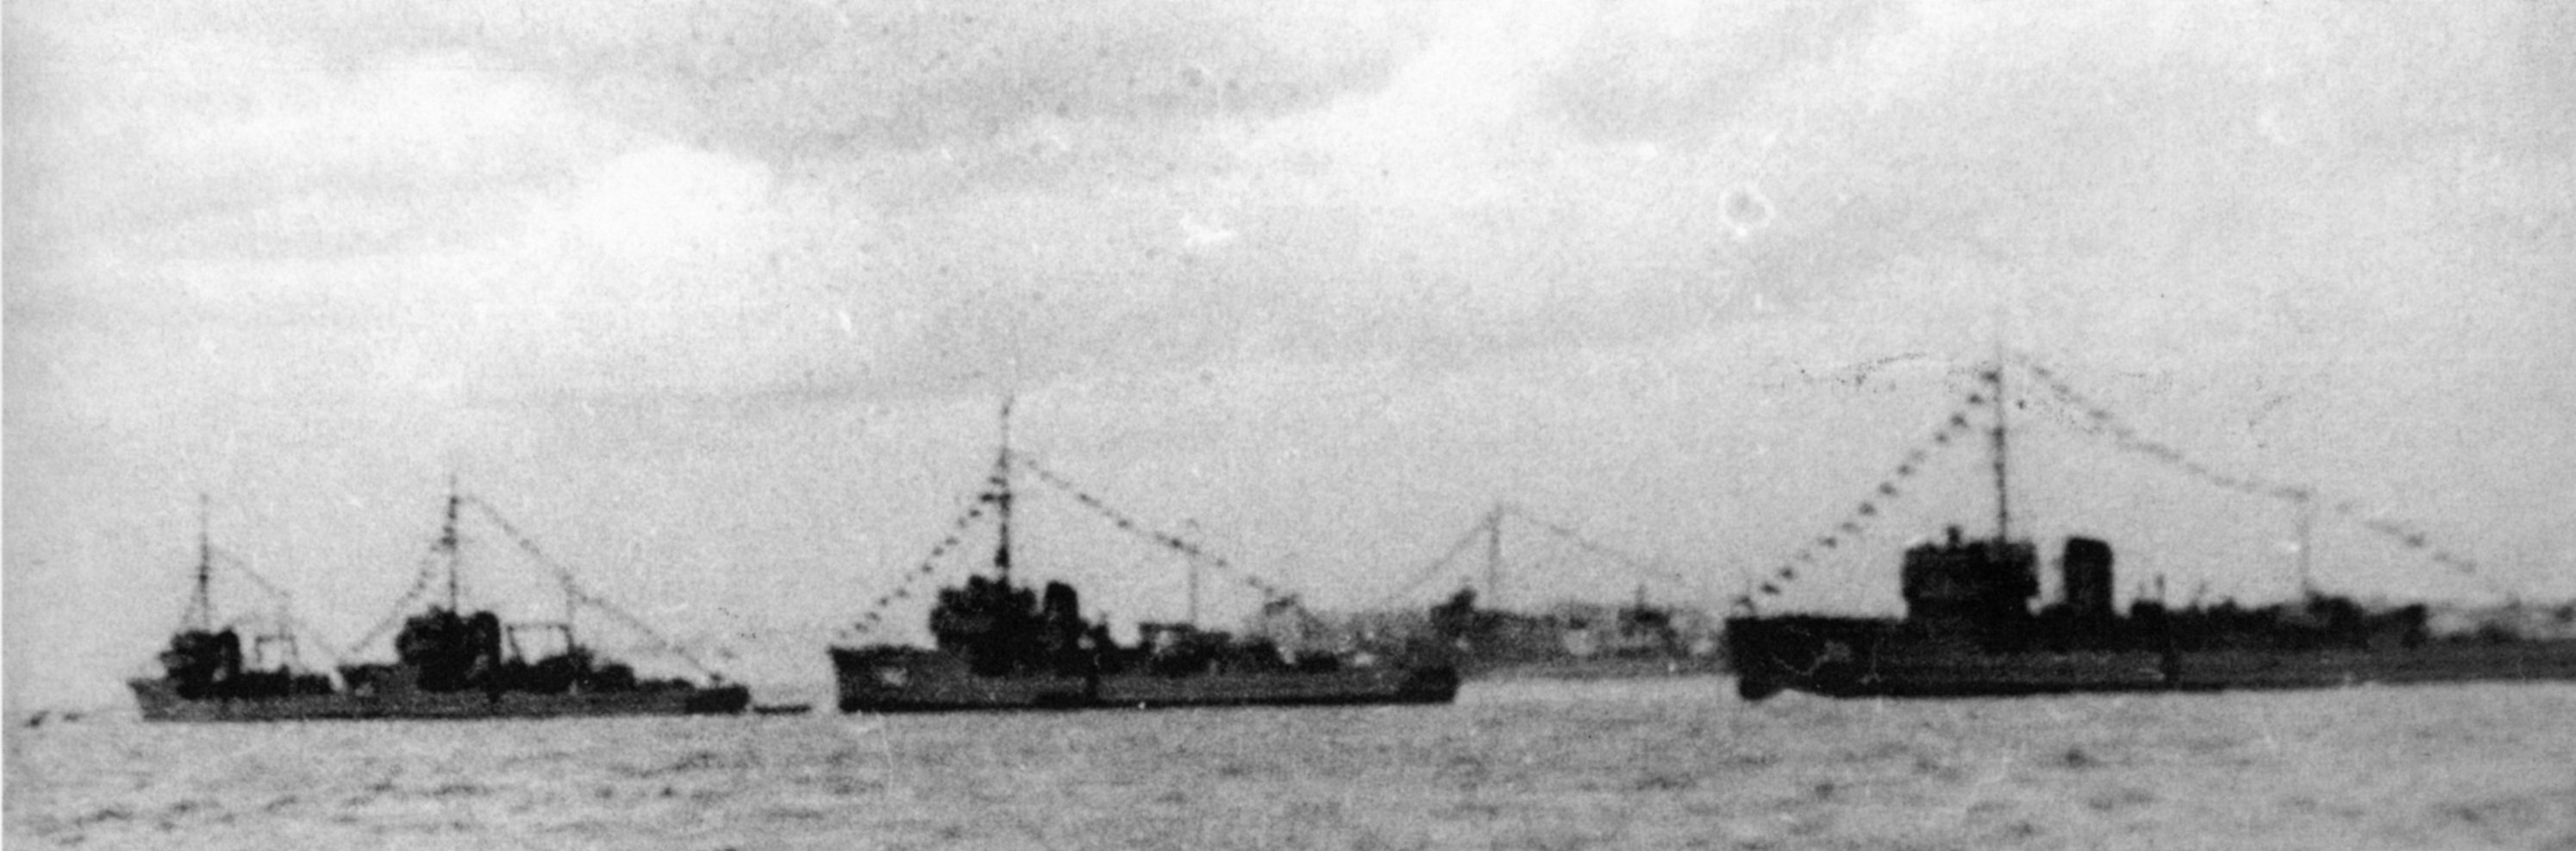 M-Boote der sowjetischer Schwarzmeerflotte auf Sevastopol Reede.JPG